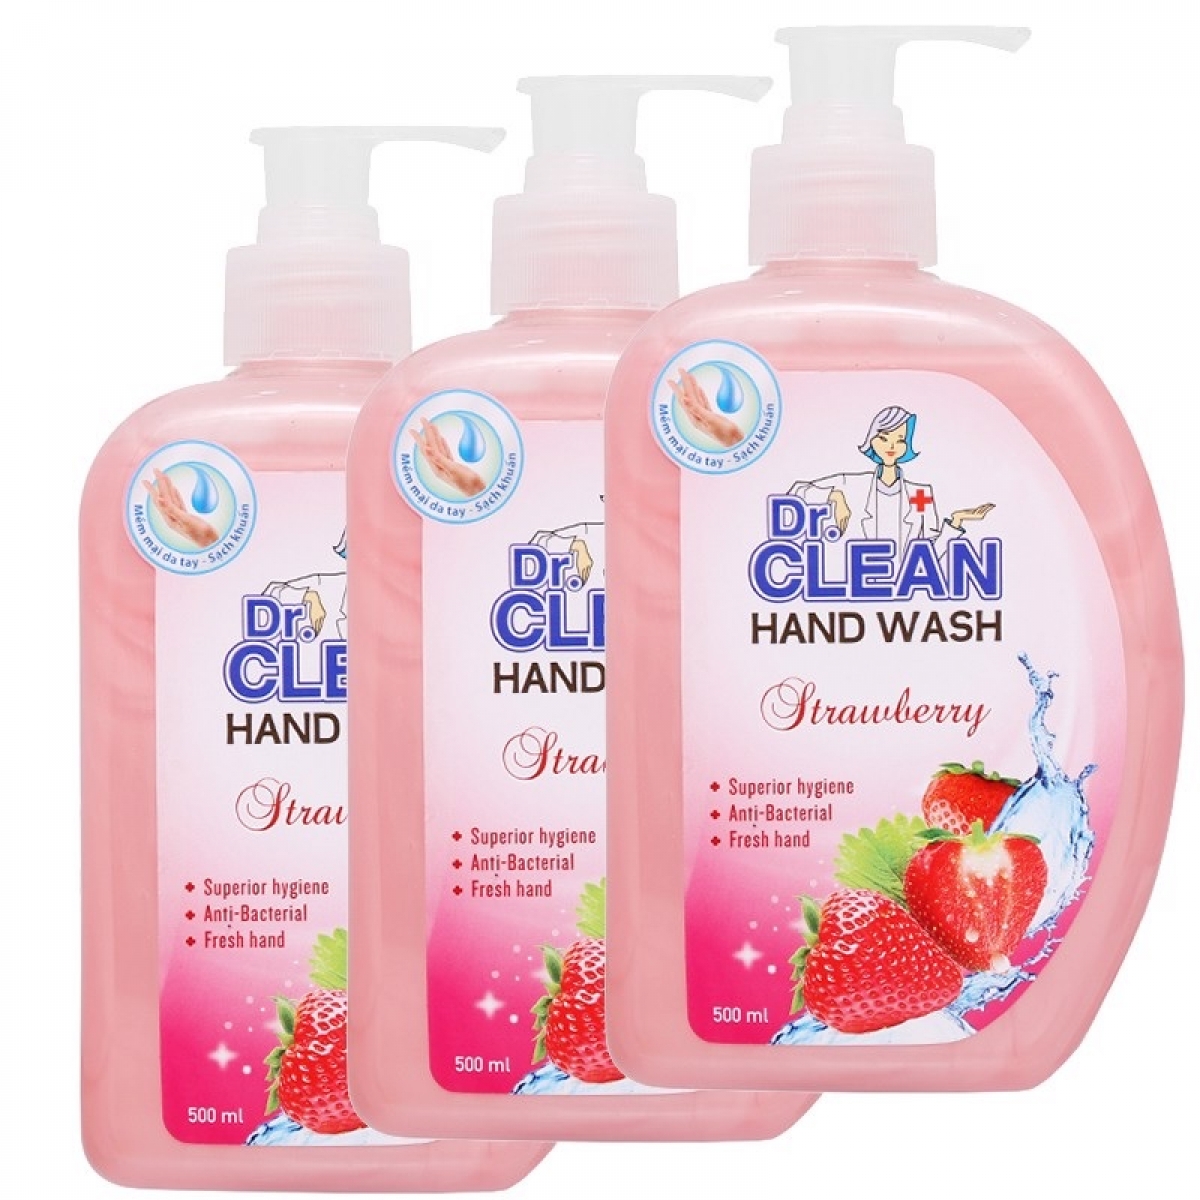 Thu hồi sữa rửa tay sạch khuẩn Dr. Clean Hương dâu trên toàn quốc do không đảm bảo chất lượng